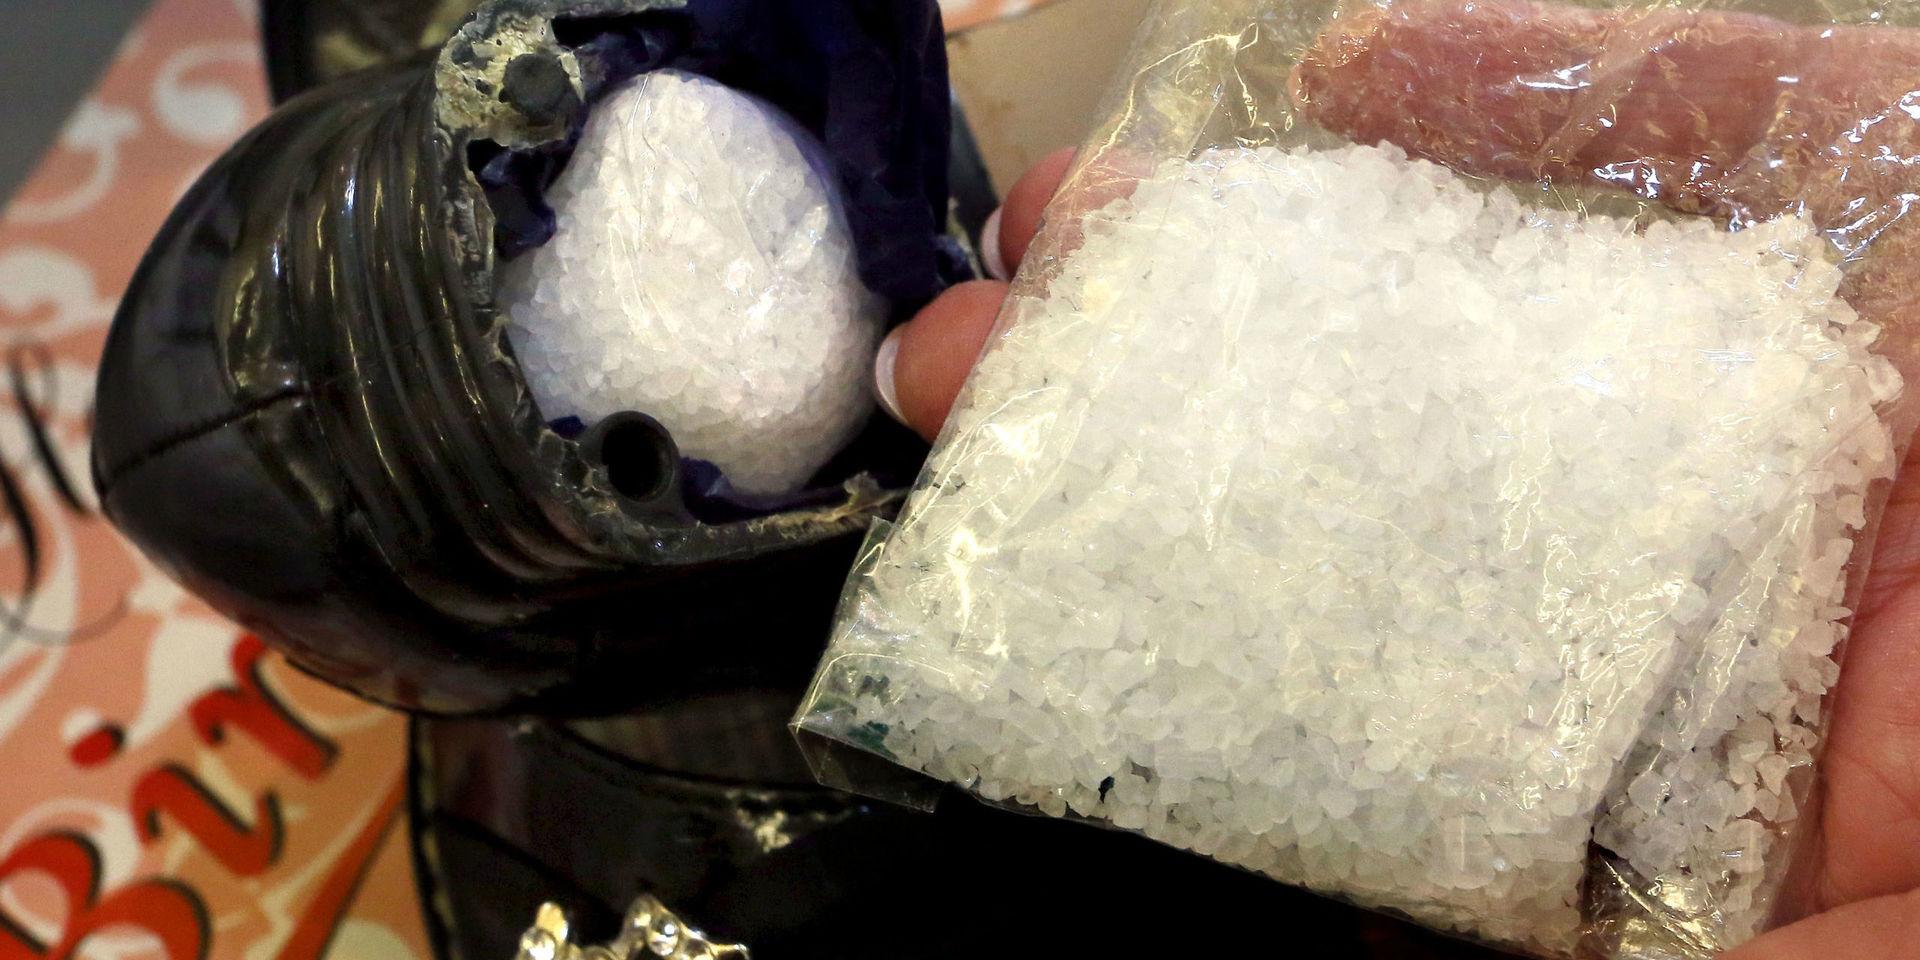 Metamfetamin, ofta i kristalliserad form vilket ibland kallas ice eller crystal meth, är en av drogerna som förknippas med kemsex. Här en bild från ett beslag gjort i Tyskland för några år sedan. Arkivbild.